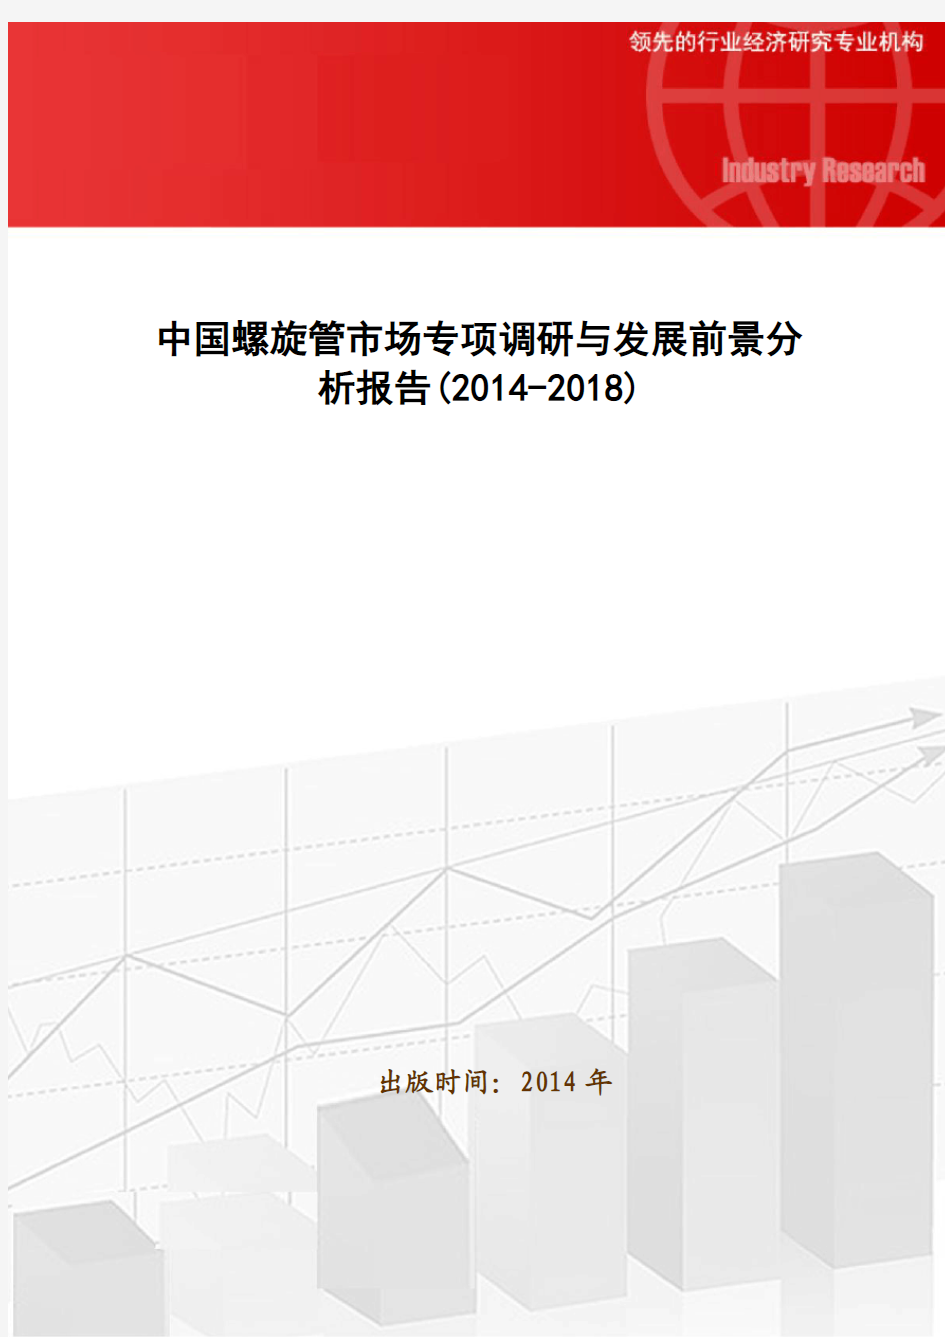 中国螺旋管市场专项调研与发展前景分析报告(2014-2018)